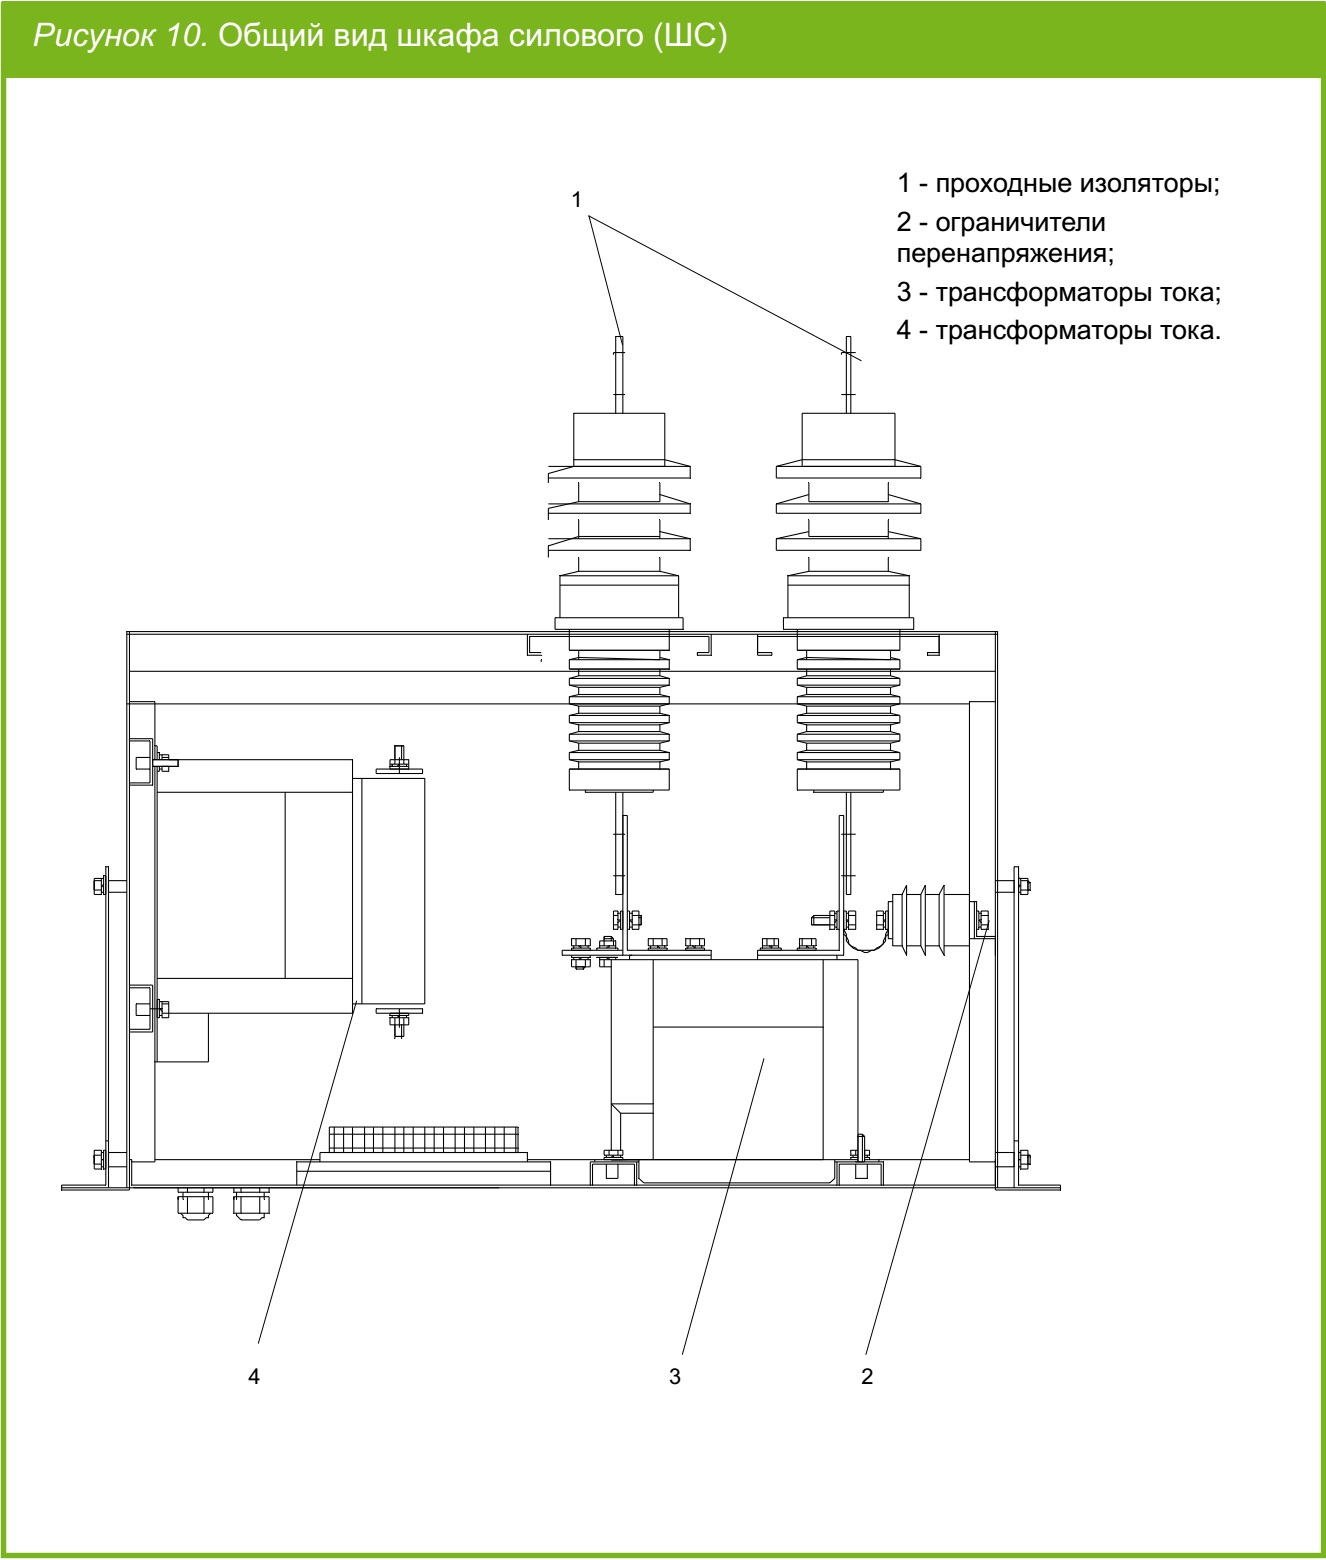 Шкаф догрузочных резисторов для трансформаторов напряжения